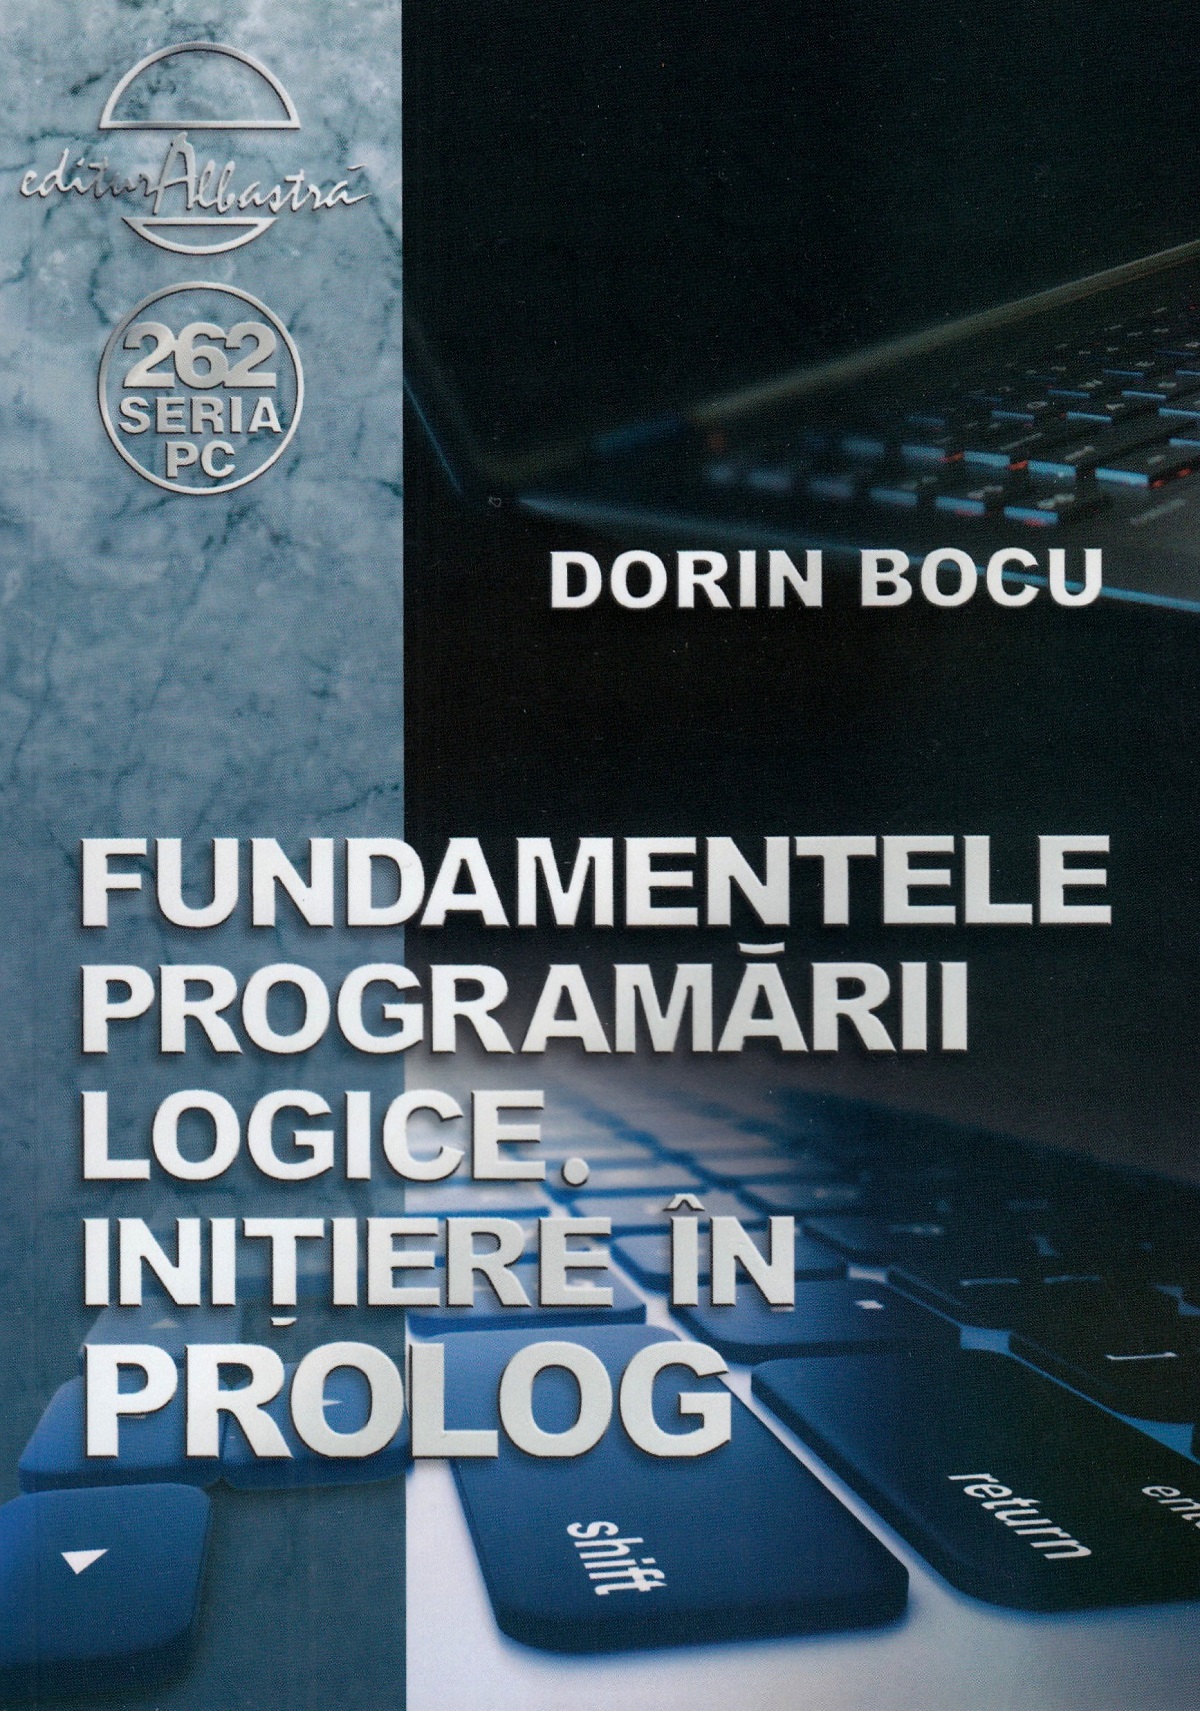 Fundamentele programarii logice. Initiere in Prolog - Dorin Bocu